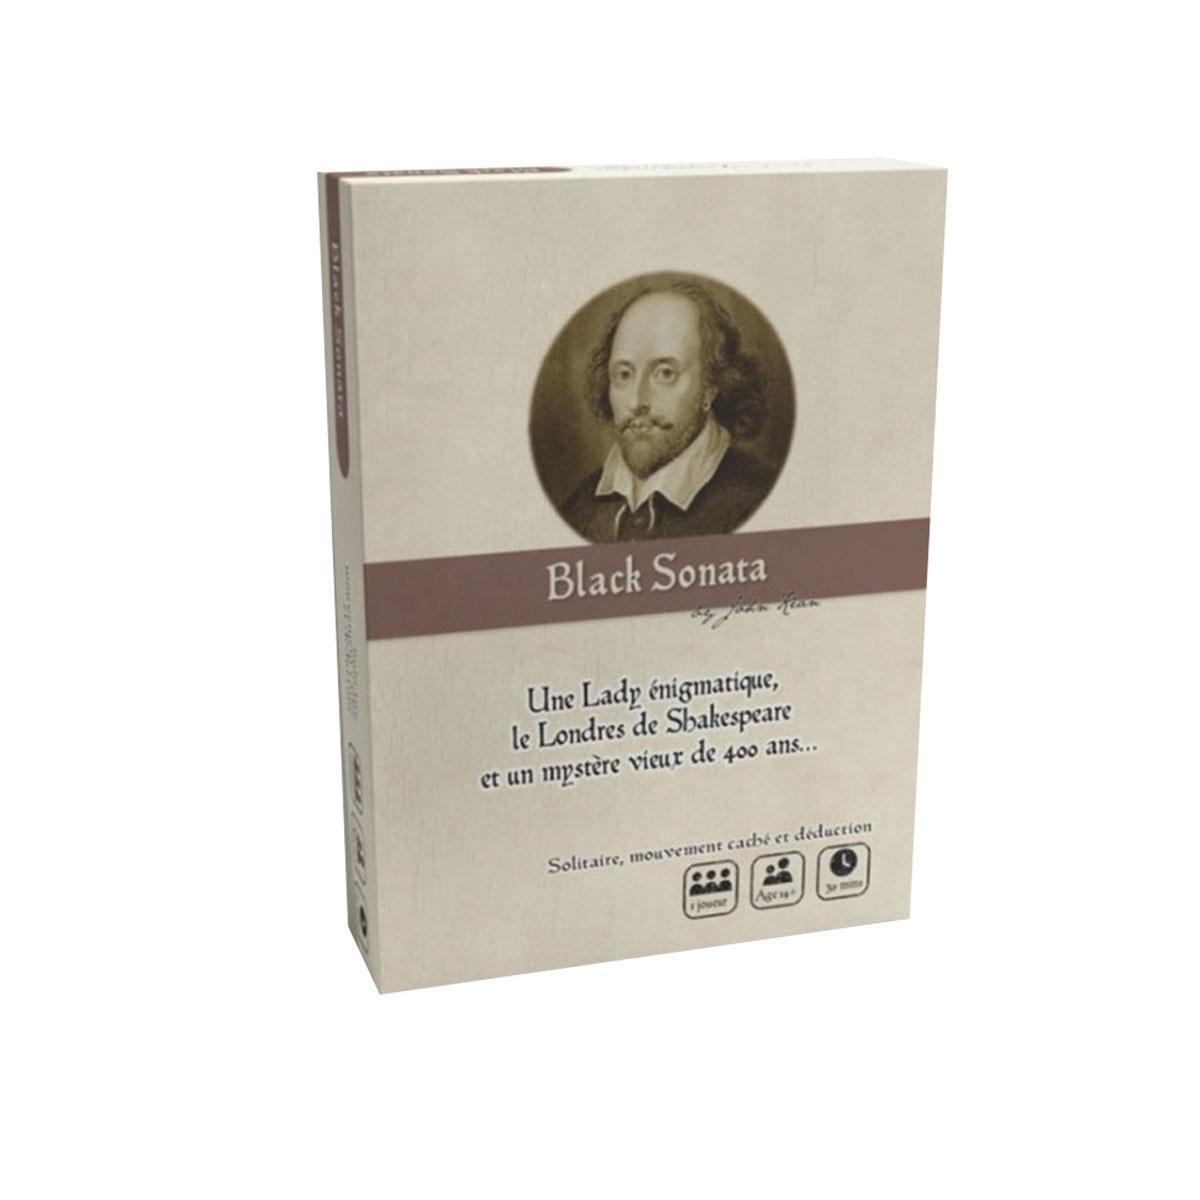 Black Sonata, jeu d'enquête et de déduction dans le Londres élisabéthain, 25 euros, philibertnet.com